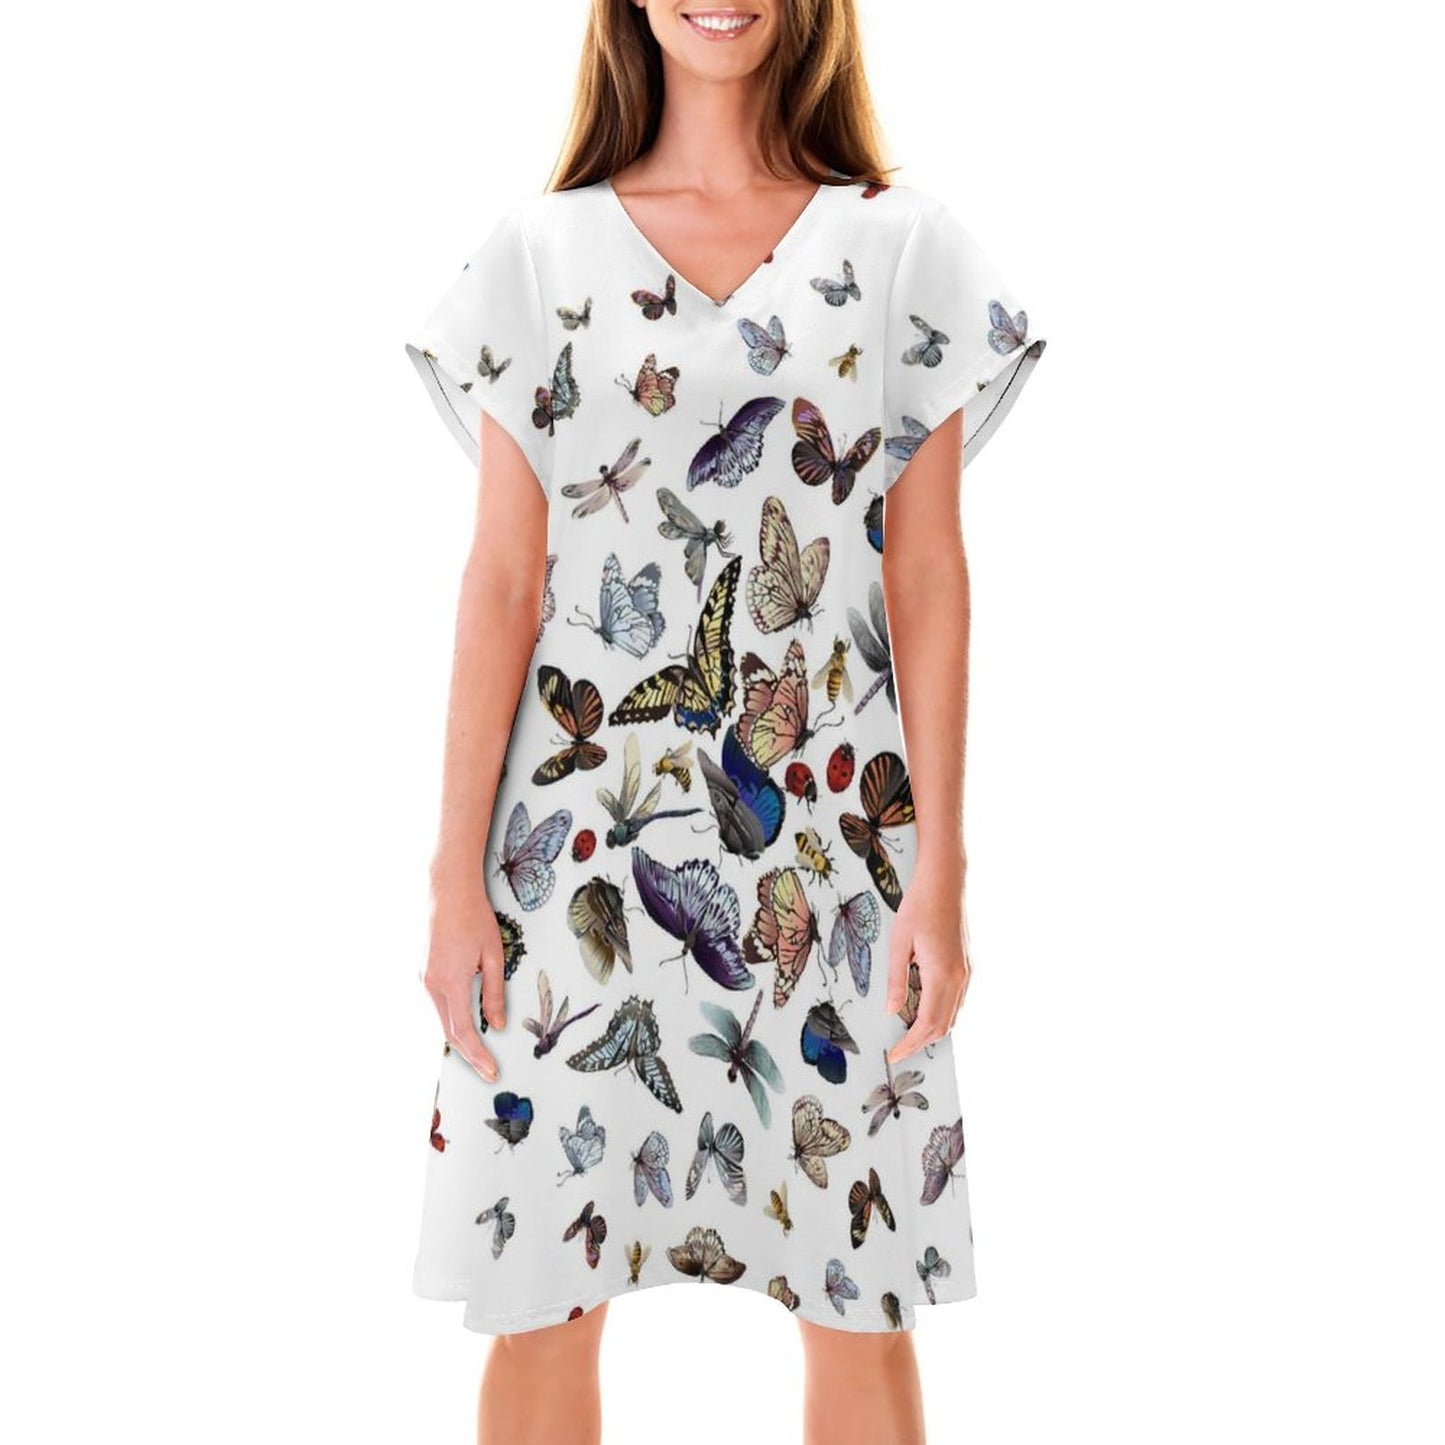 Online DIY Dress for Women V-neck Short Sleeve Skirt Butterfly Insect